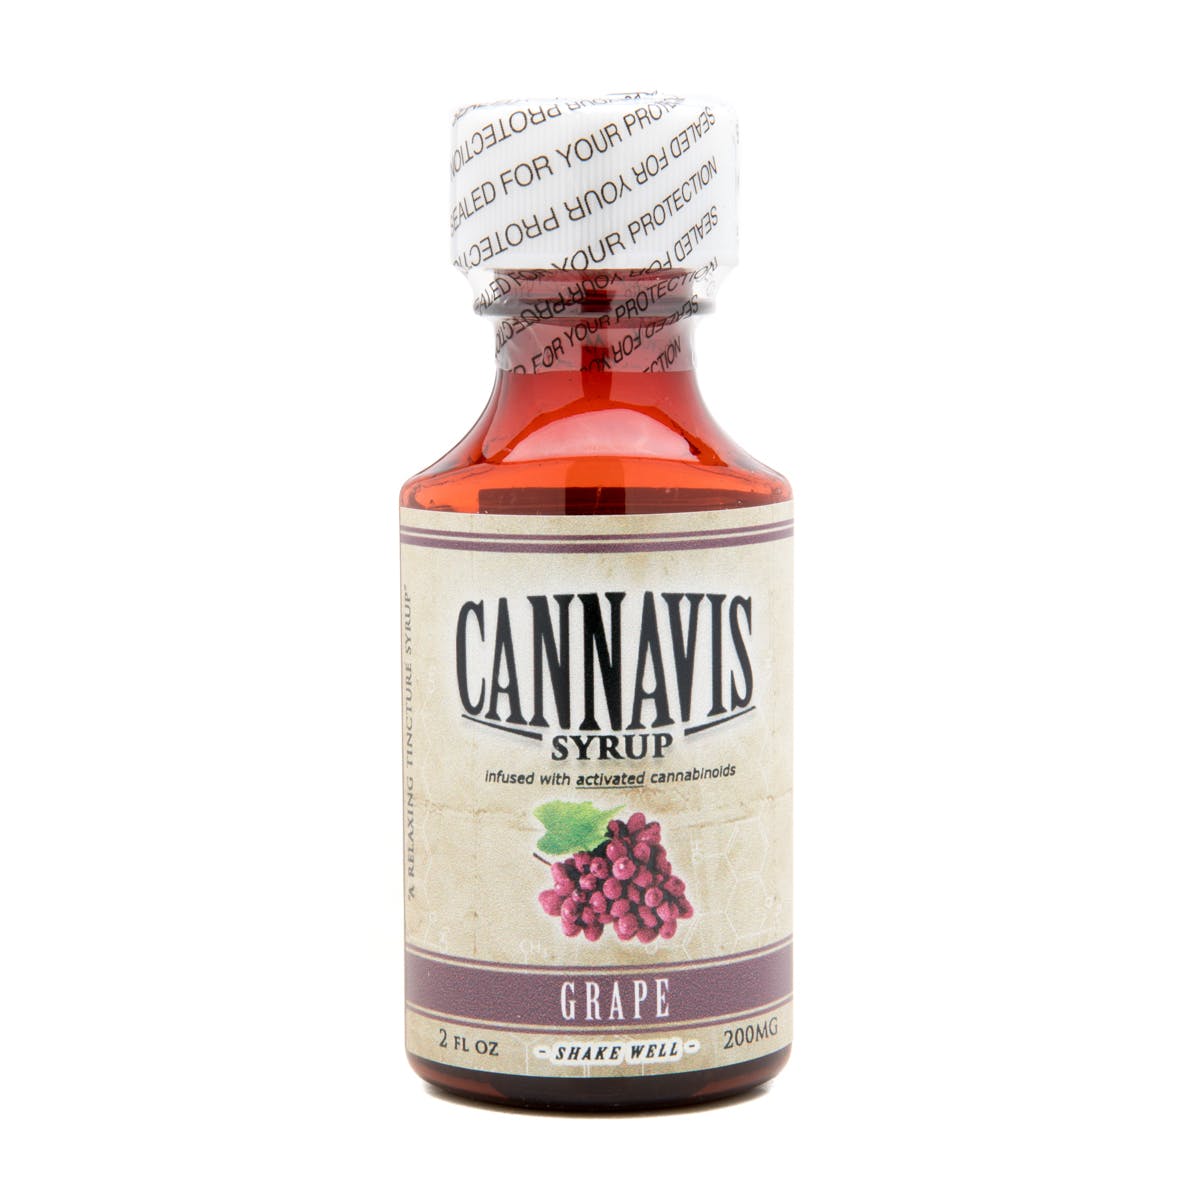 marijuana-dispensaries-pomonas-plug-20-cap-in-pomona-cannavis-syrup-2c-grape-200mg